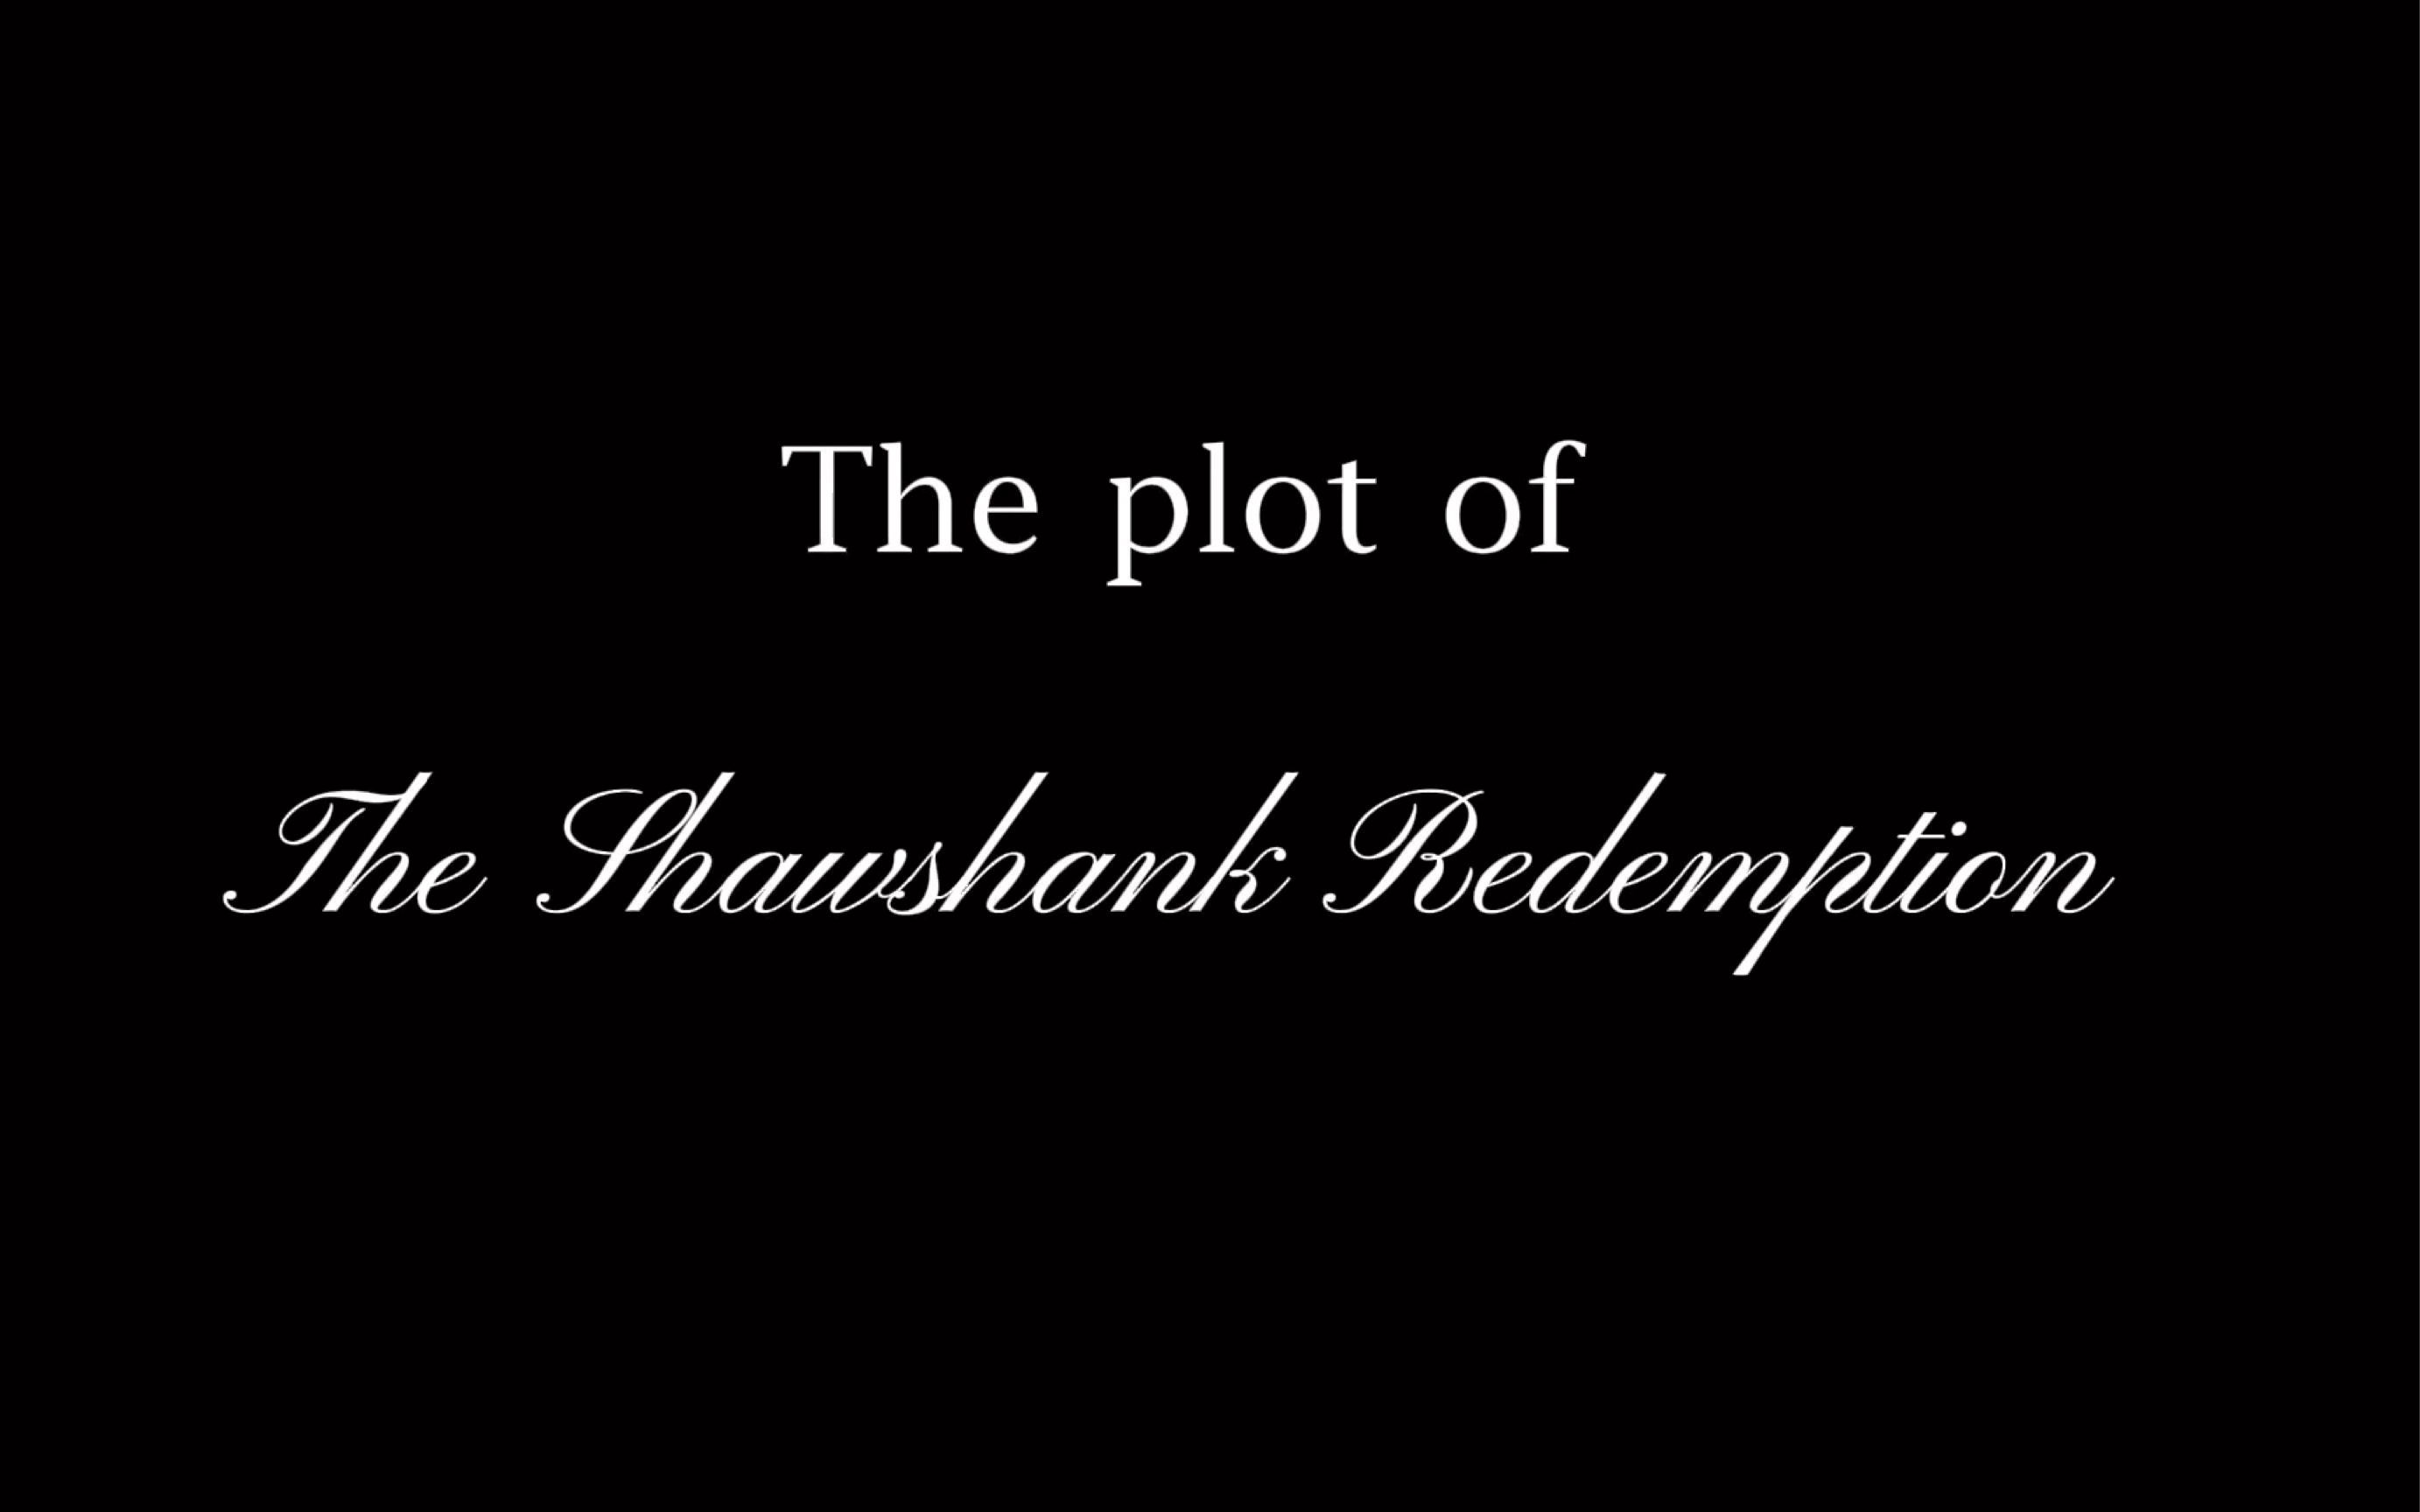 shawshank redemption short summary